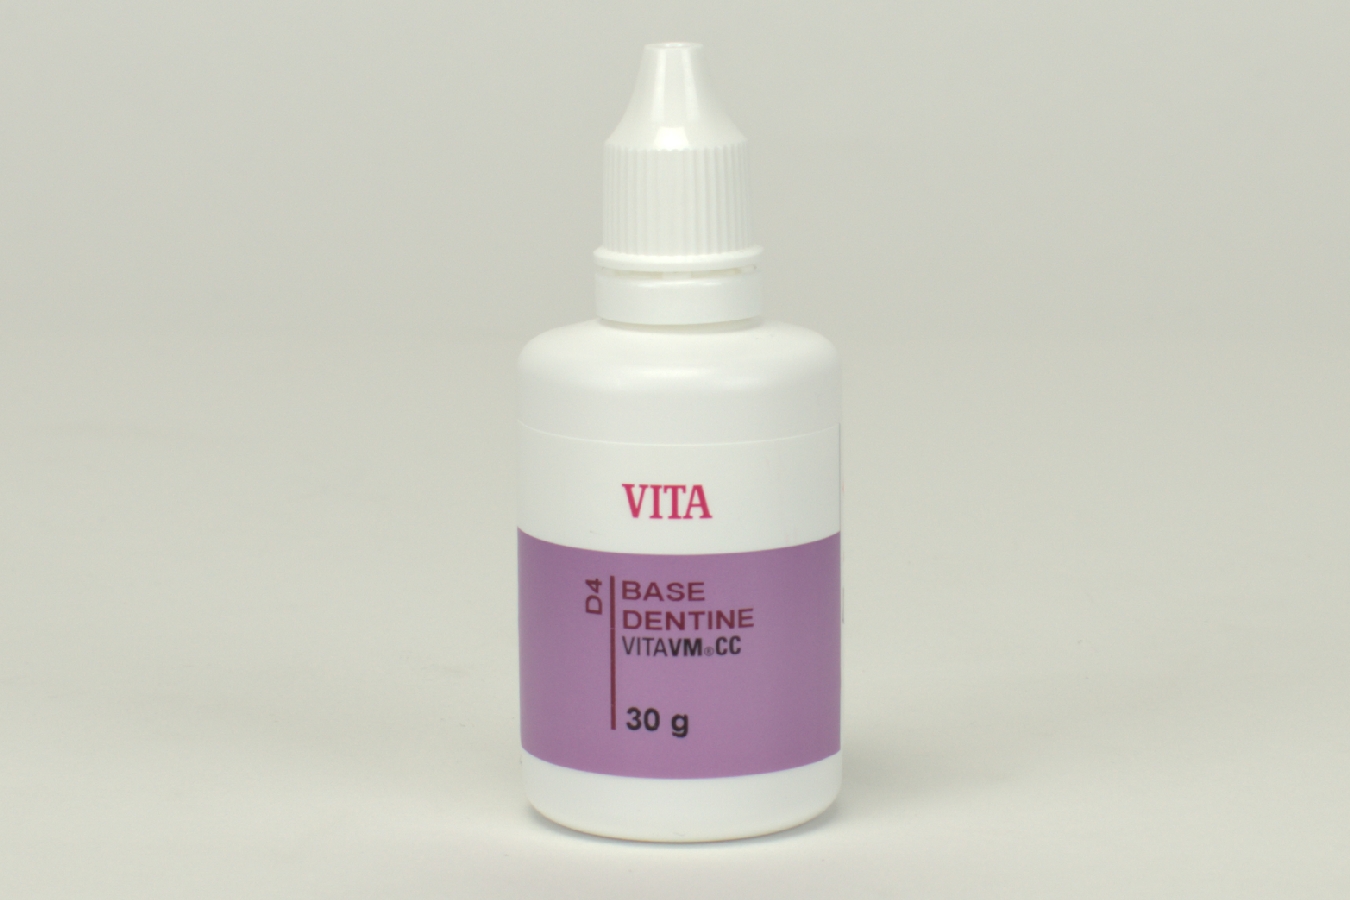 Vita VM CC Base Dentin D4 30g